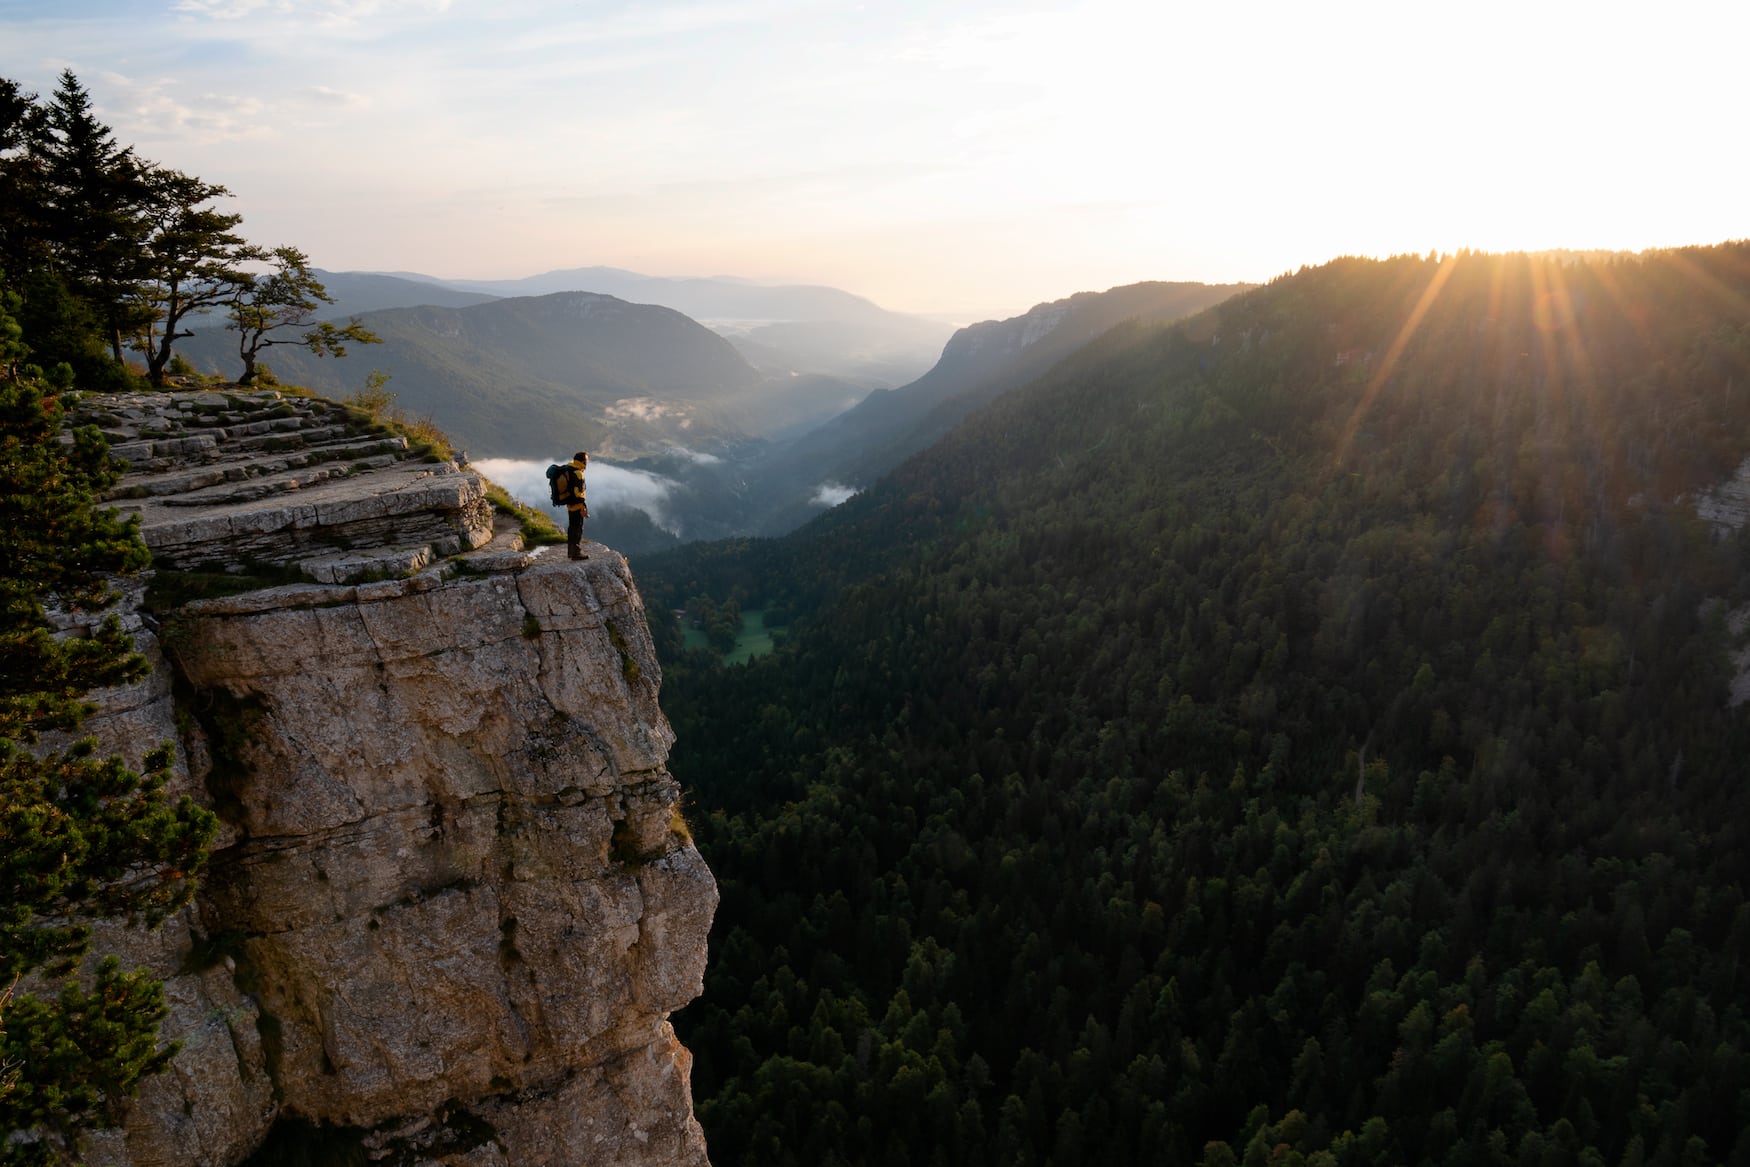 Sonnenaufgang am Creux du Van Neuchatel mit einem Mann, der auf einer steilen Klippe steht und dem warmen Sonnenlicht über dem Grat entgegensieht